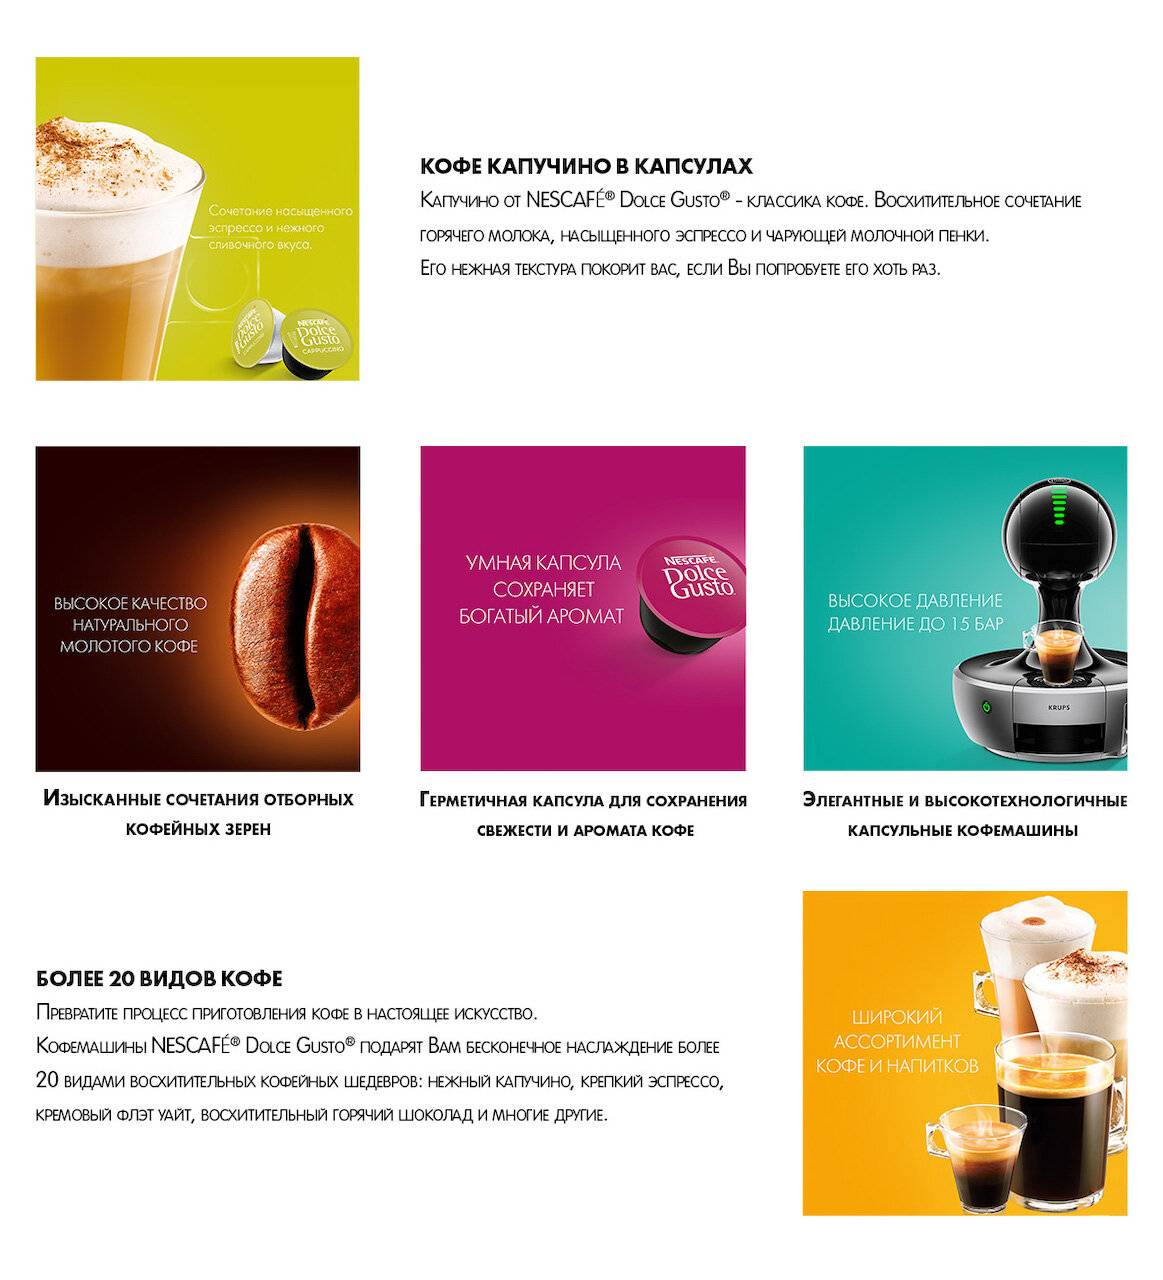 Какие бывают капсулы для кофемашин и как ими пользоваться